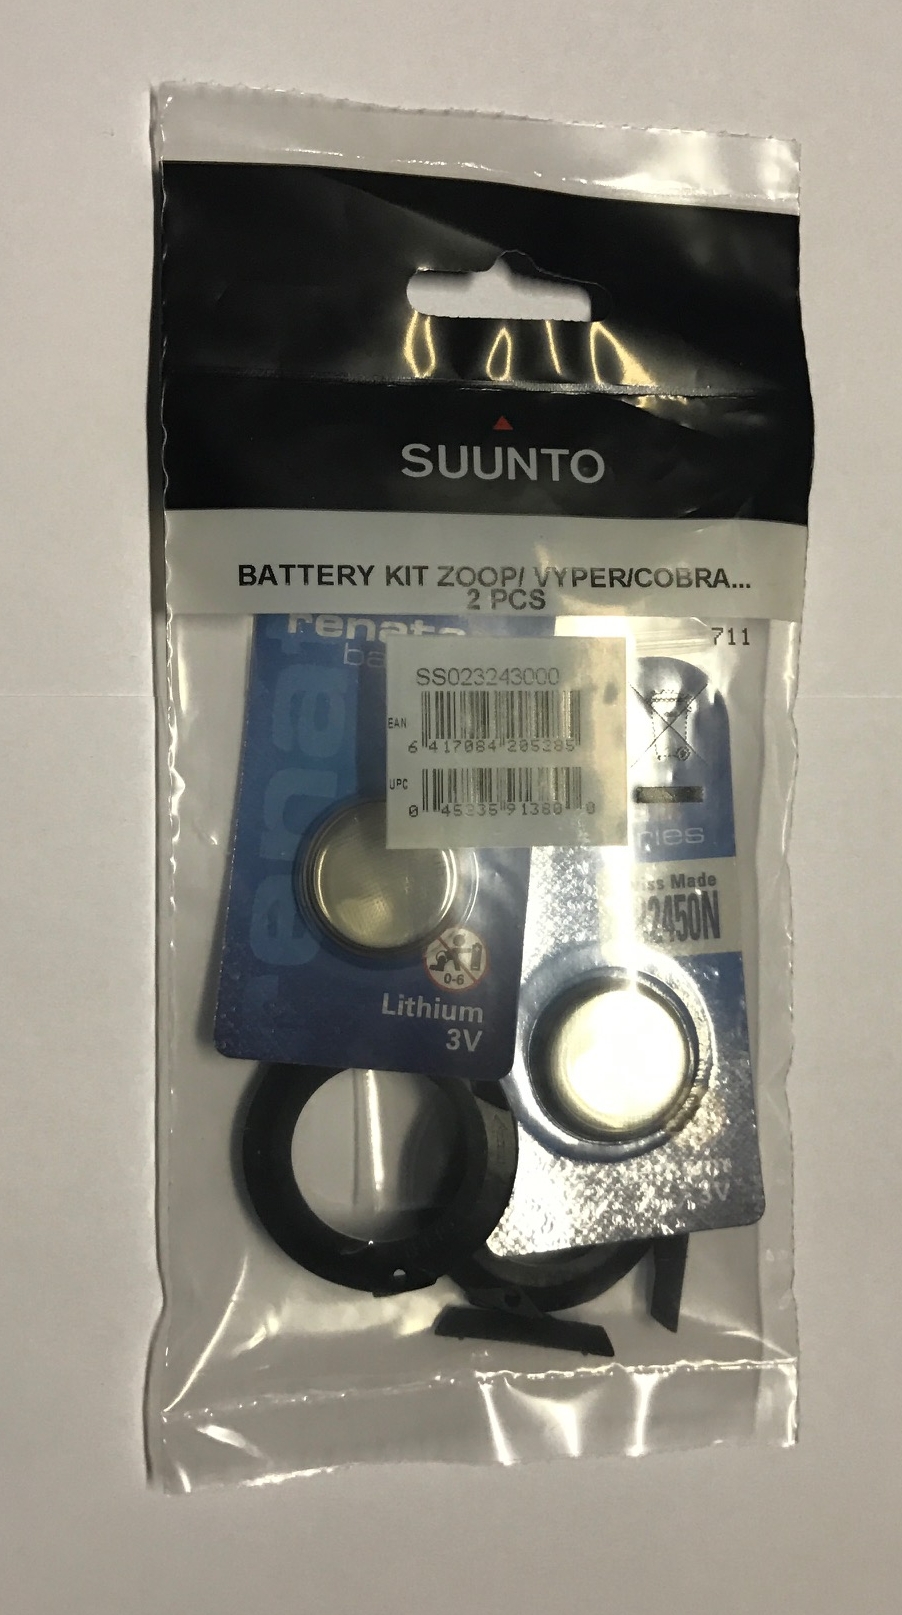 Suunto Batteriewechselsätze für Gekko ZOOP Vyper Cobra Vytec - 2 Stück